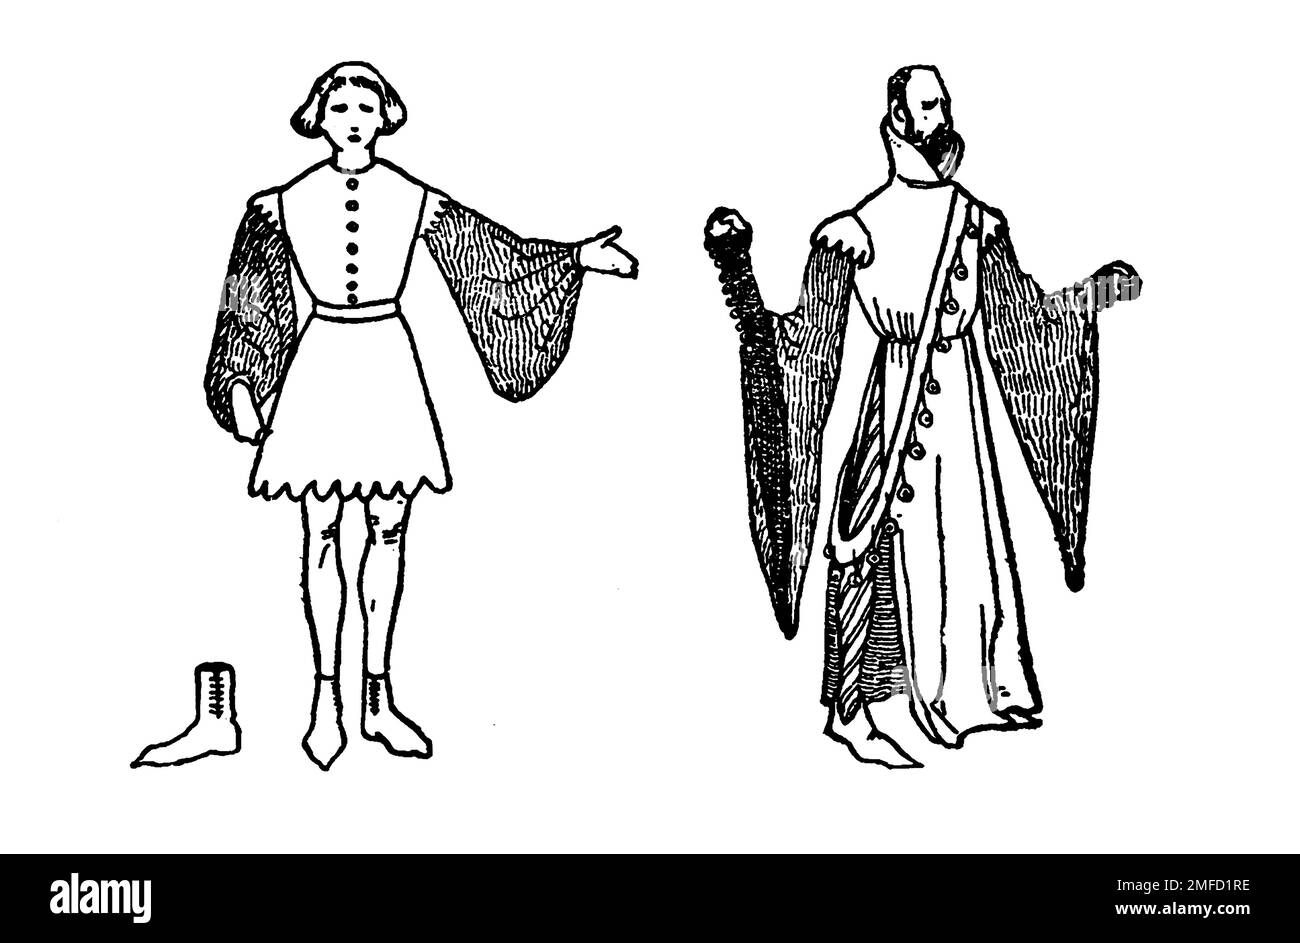 Strichzeichnung von Herrenkostümen im 15. Jahrhundert aus dem Buch " English Costume " von Dion Clayton Calthrop, 1878-1937 Publikationsdatum 1907 Publisher London, A. & C. Black Stockfoto